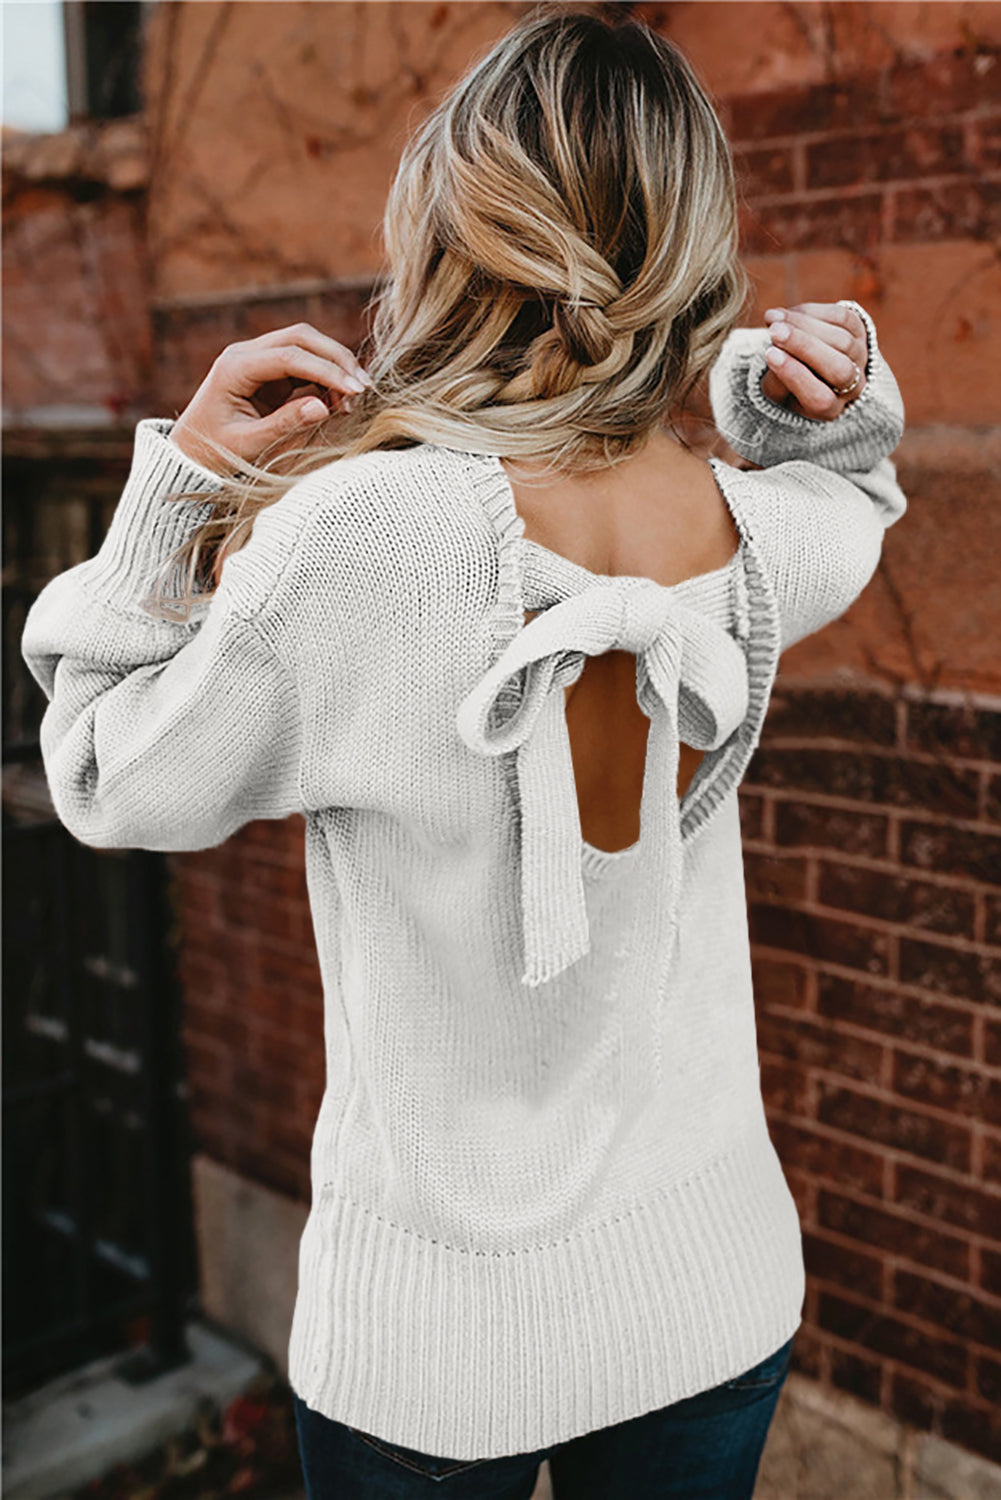 Bel pulover s spuščenimi rameni in zavezovanjem